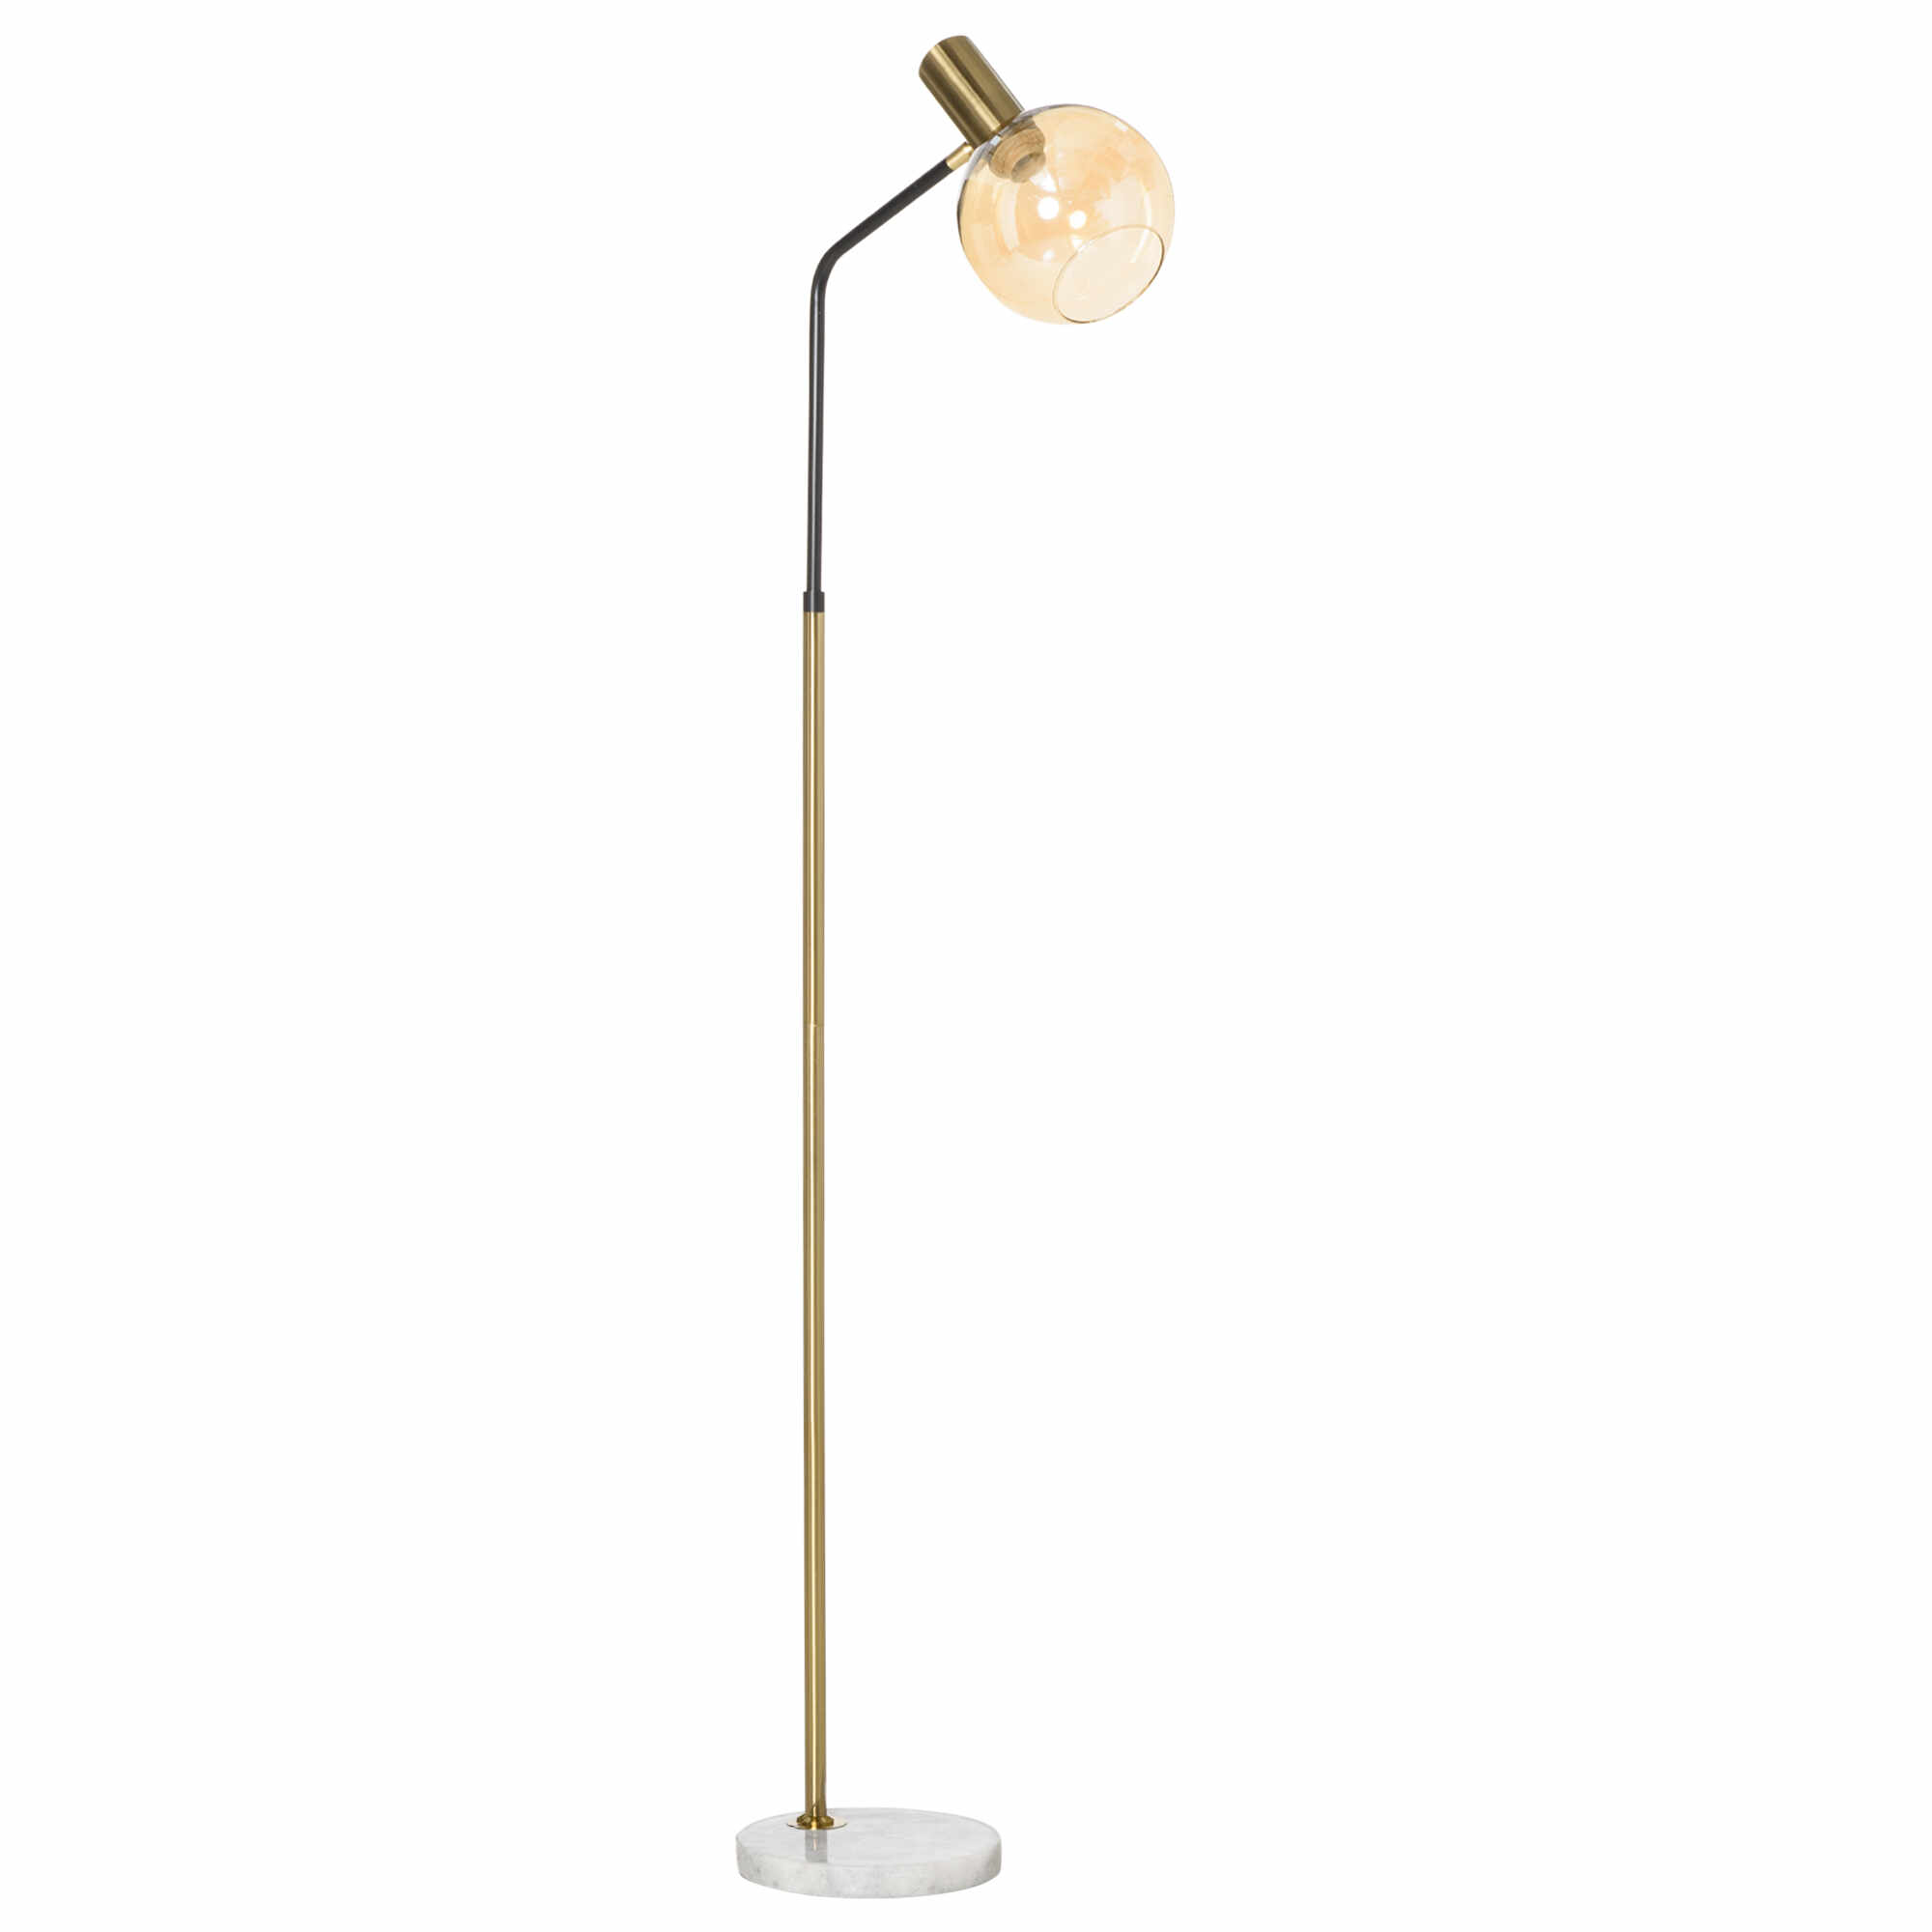 Lampa de Podea Moderna din Metal HOMCOM, Lampa de Design cu Abajur din Sticla pentru Becuri E27 40W, 50x25x160cm, Negru si Auriu